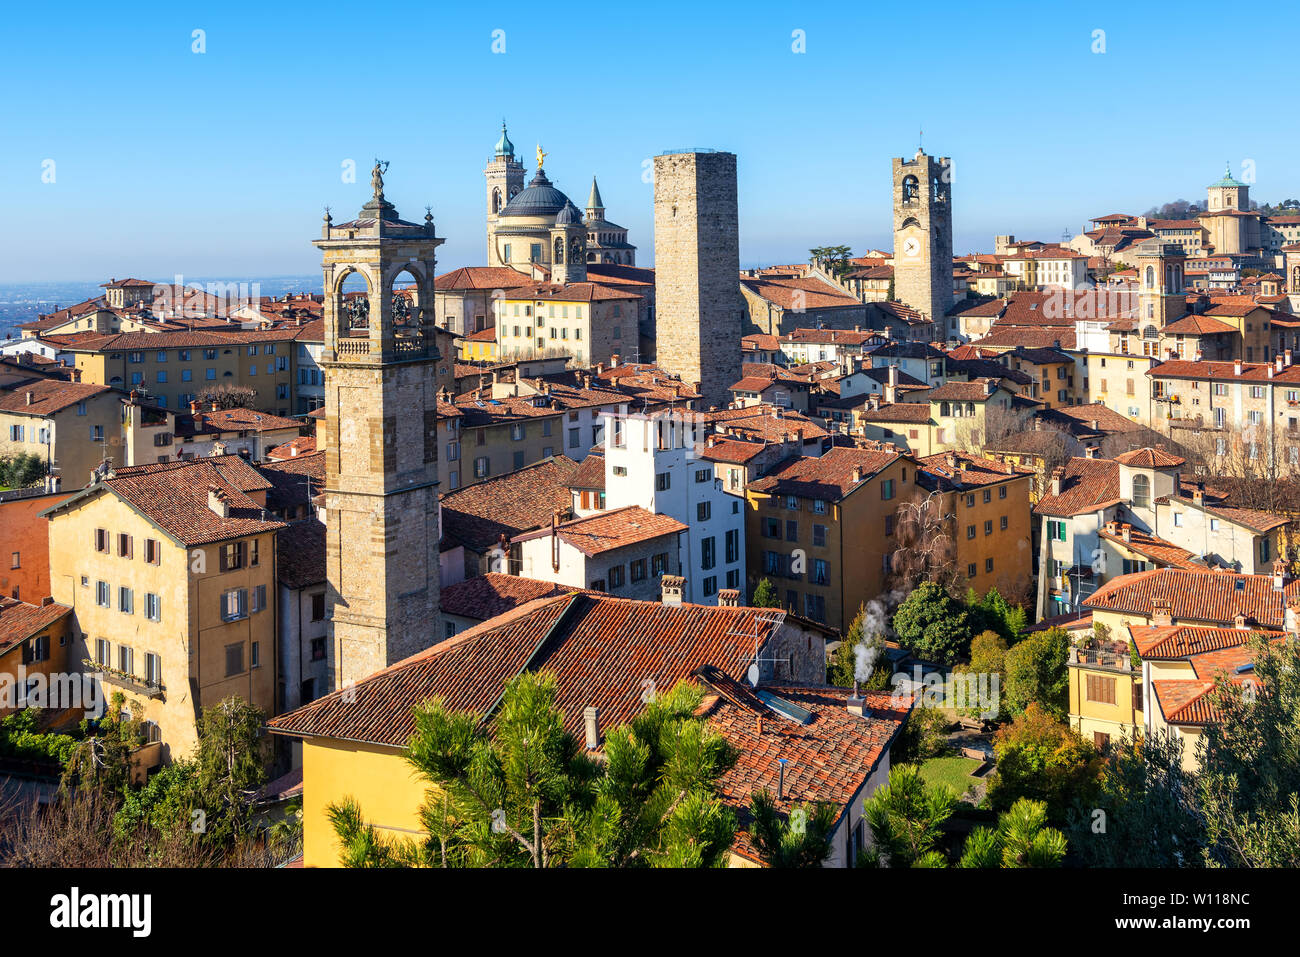 Bergame, vue sur les toits de tuiles rouges et les tours de la vieille ville historique médiévale, Lombardie, Italie Banque D'Images